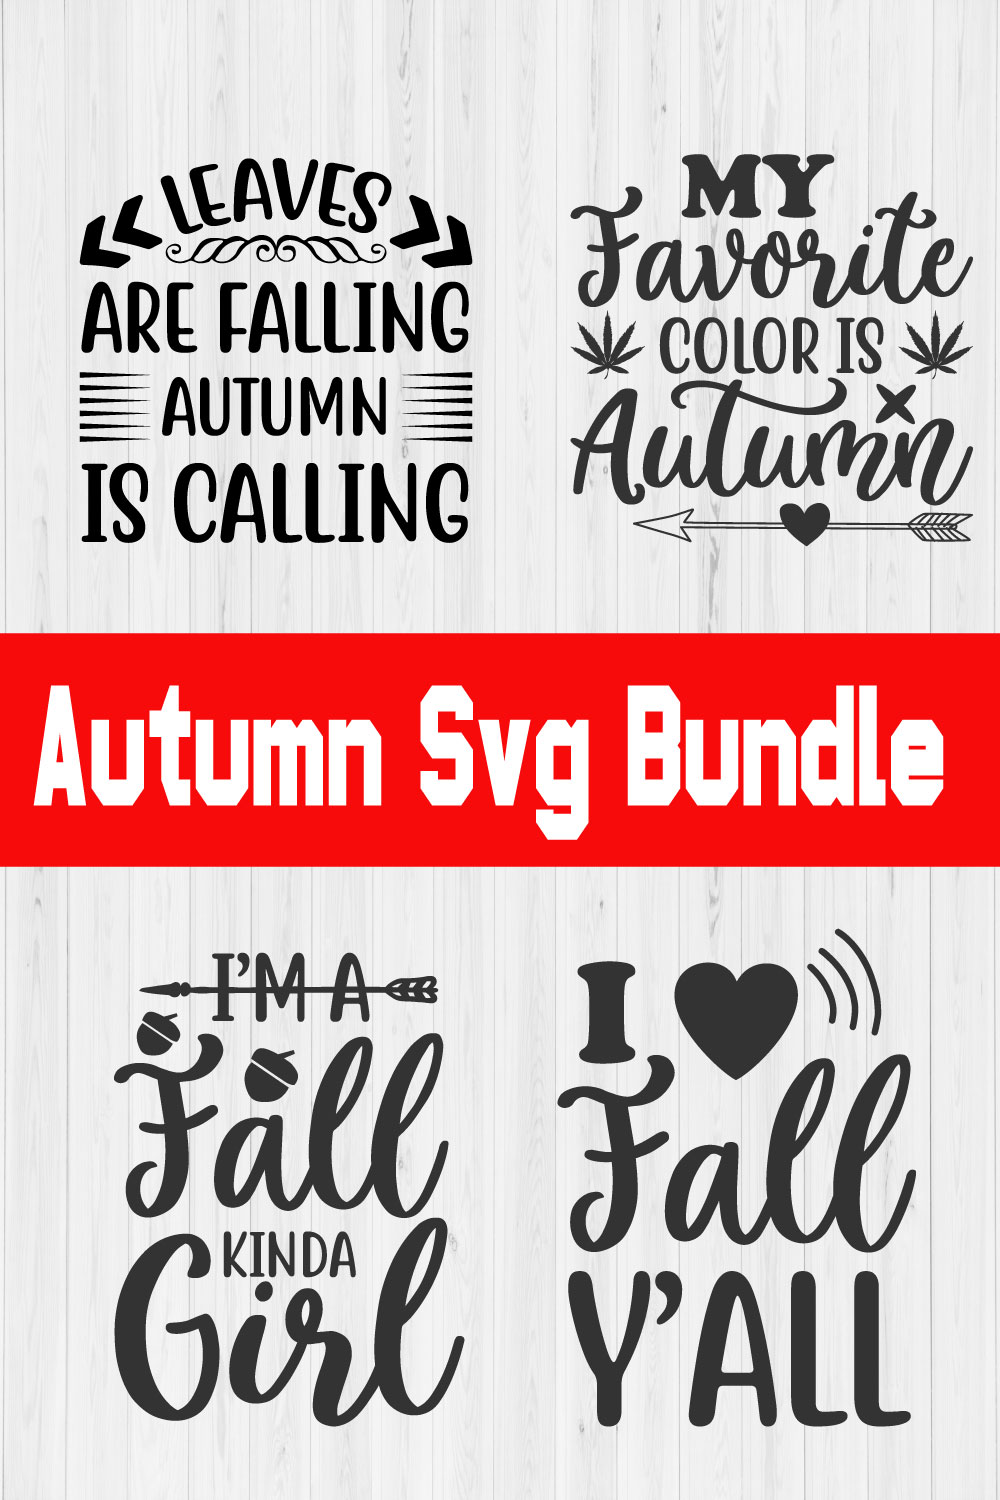 Autumn Svg Bundle Vol1 pinterest preview image.